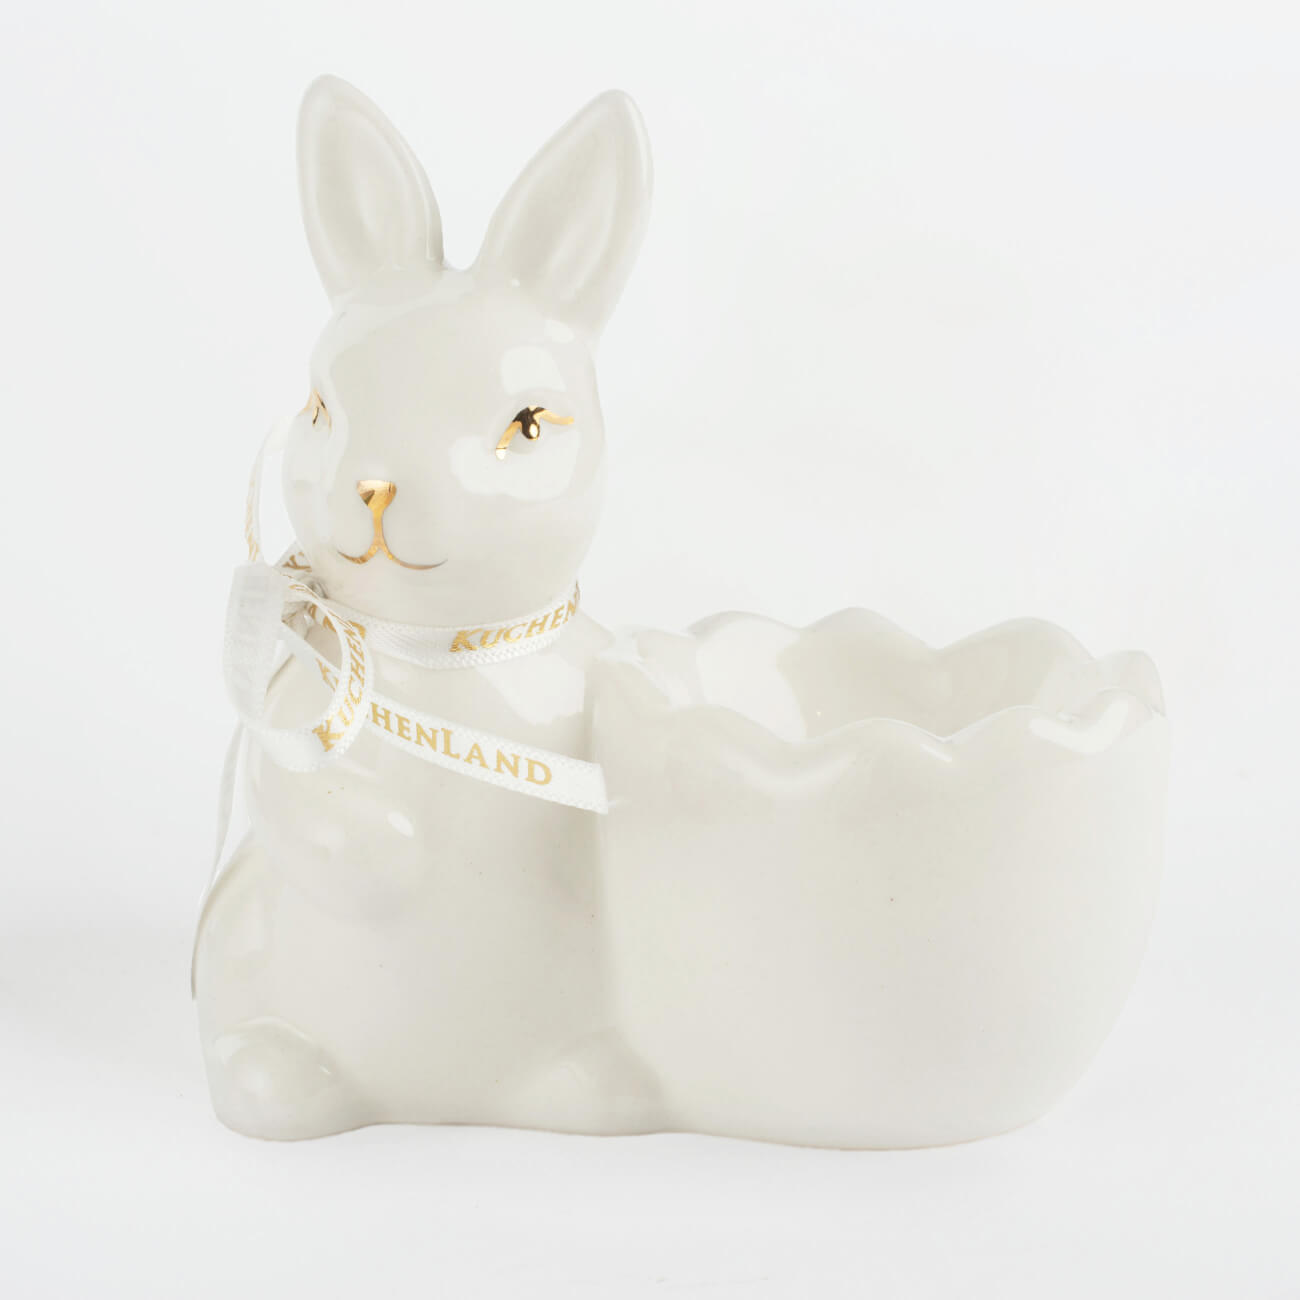 Подставка для яйца, 10 см, керамика, бело-золотистая, Кролик со скорлупкой, Easter gold подставка для яйца 9х7 см бамбук кролик natural easter